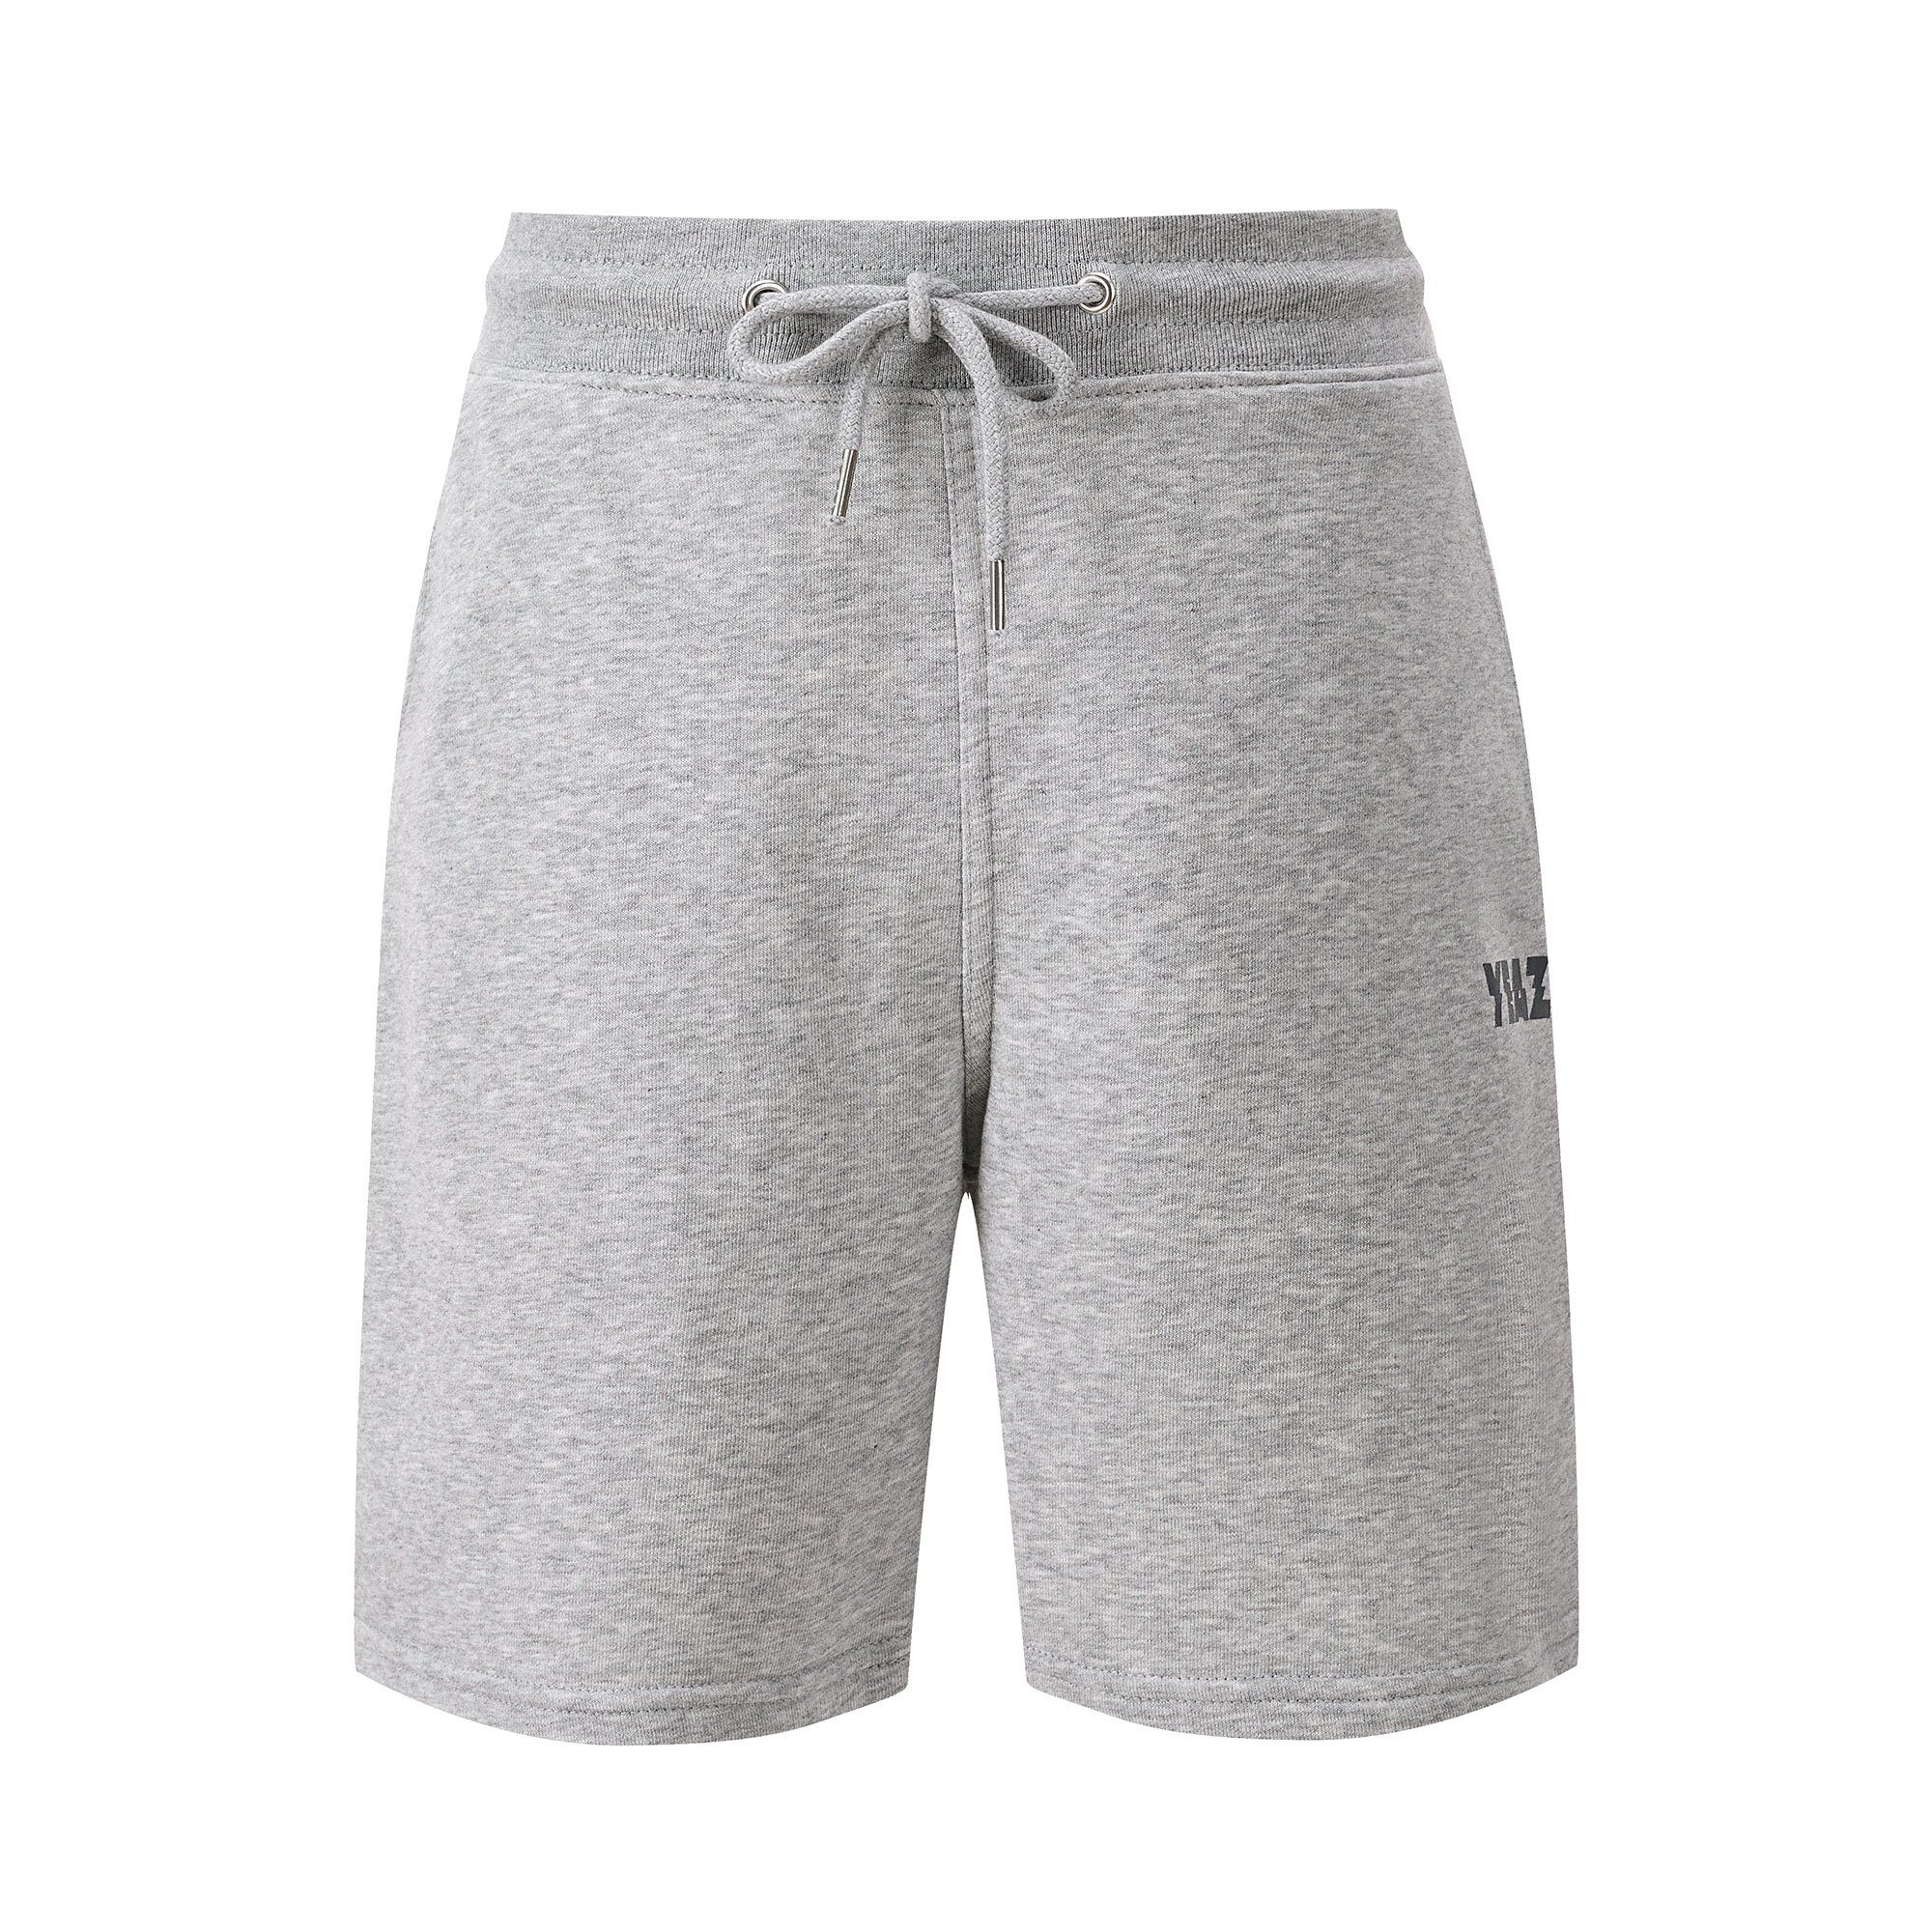 YEAZ grau CHAX Yogashorts shorts (2-tlg)